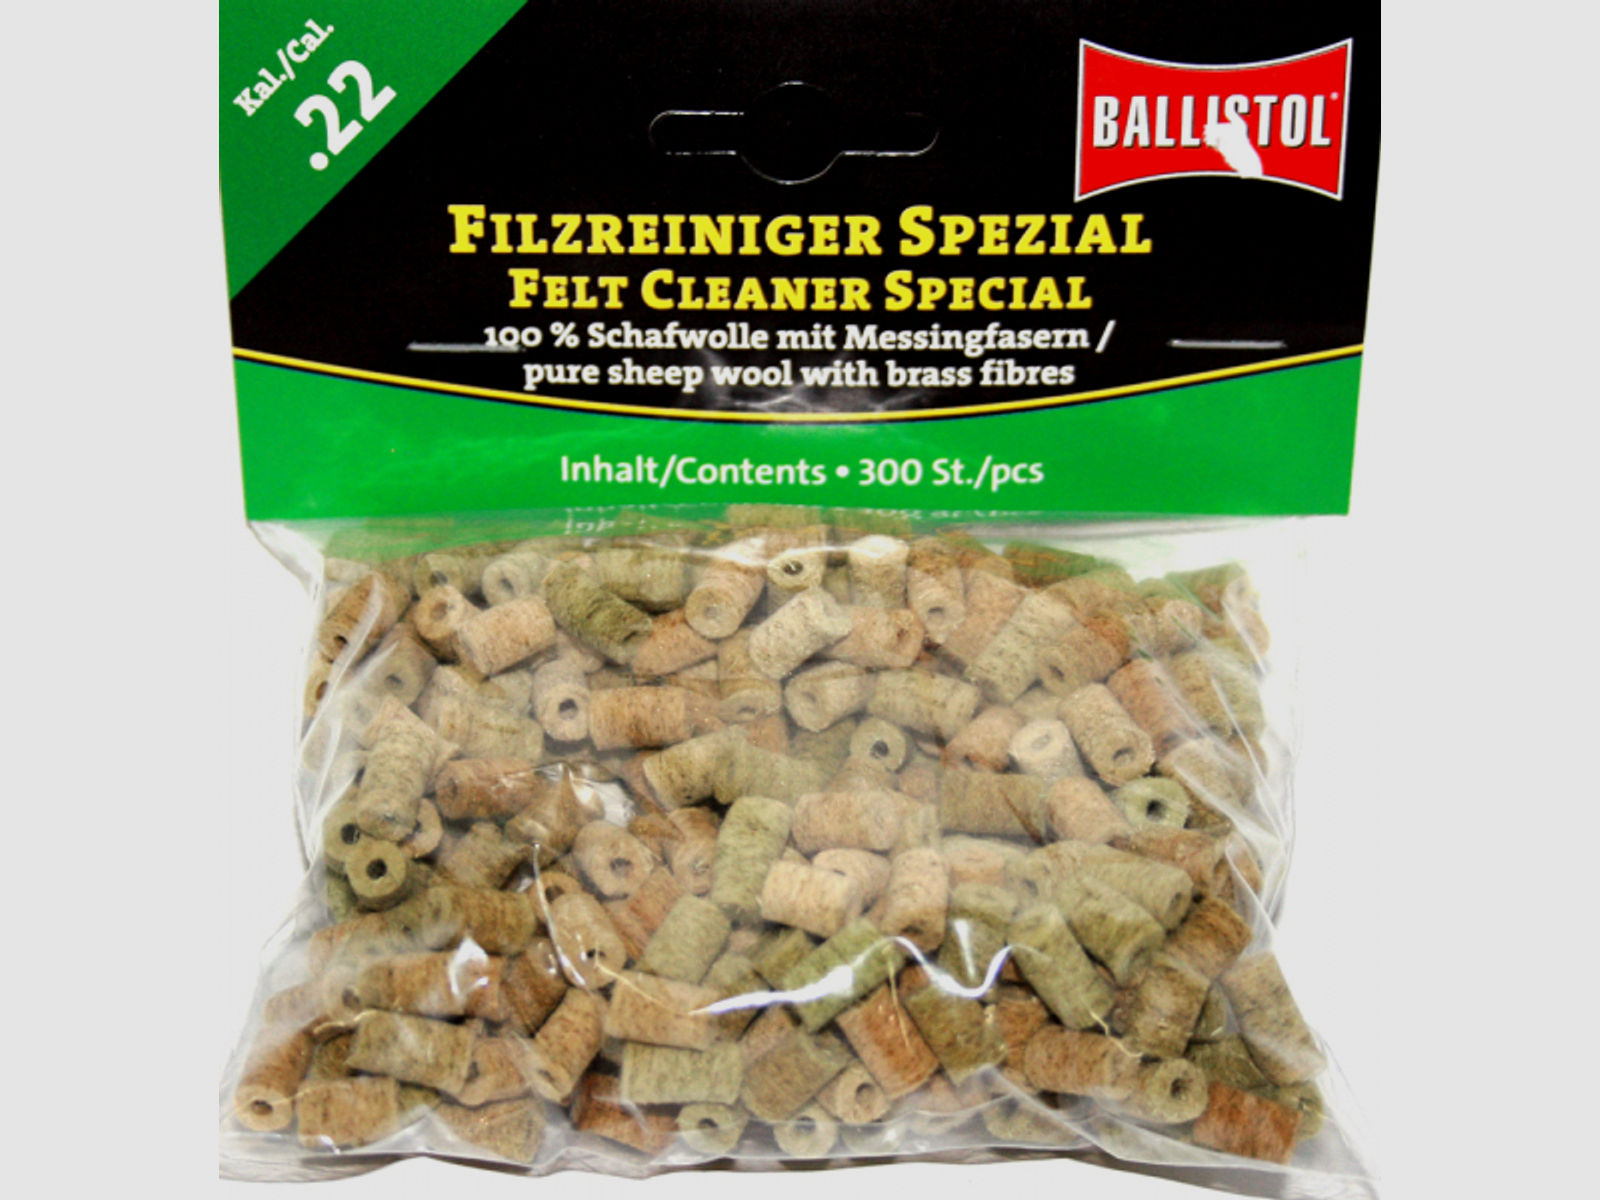 300x BALLISTOL Reinigungsfilze/Filzreiniger SPEZIAL Cal.22 | Schafwolle mit Messingfasern! 5,6mm 223